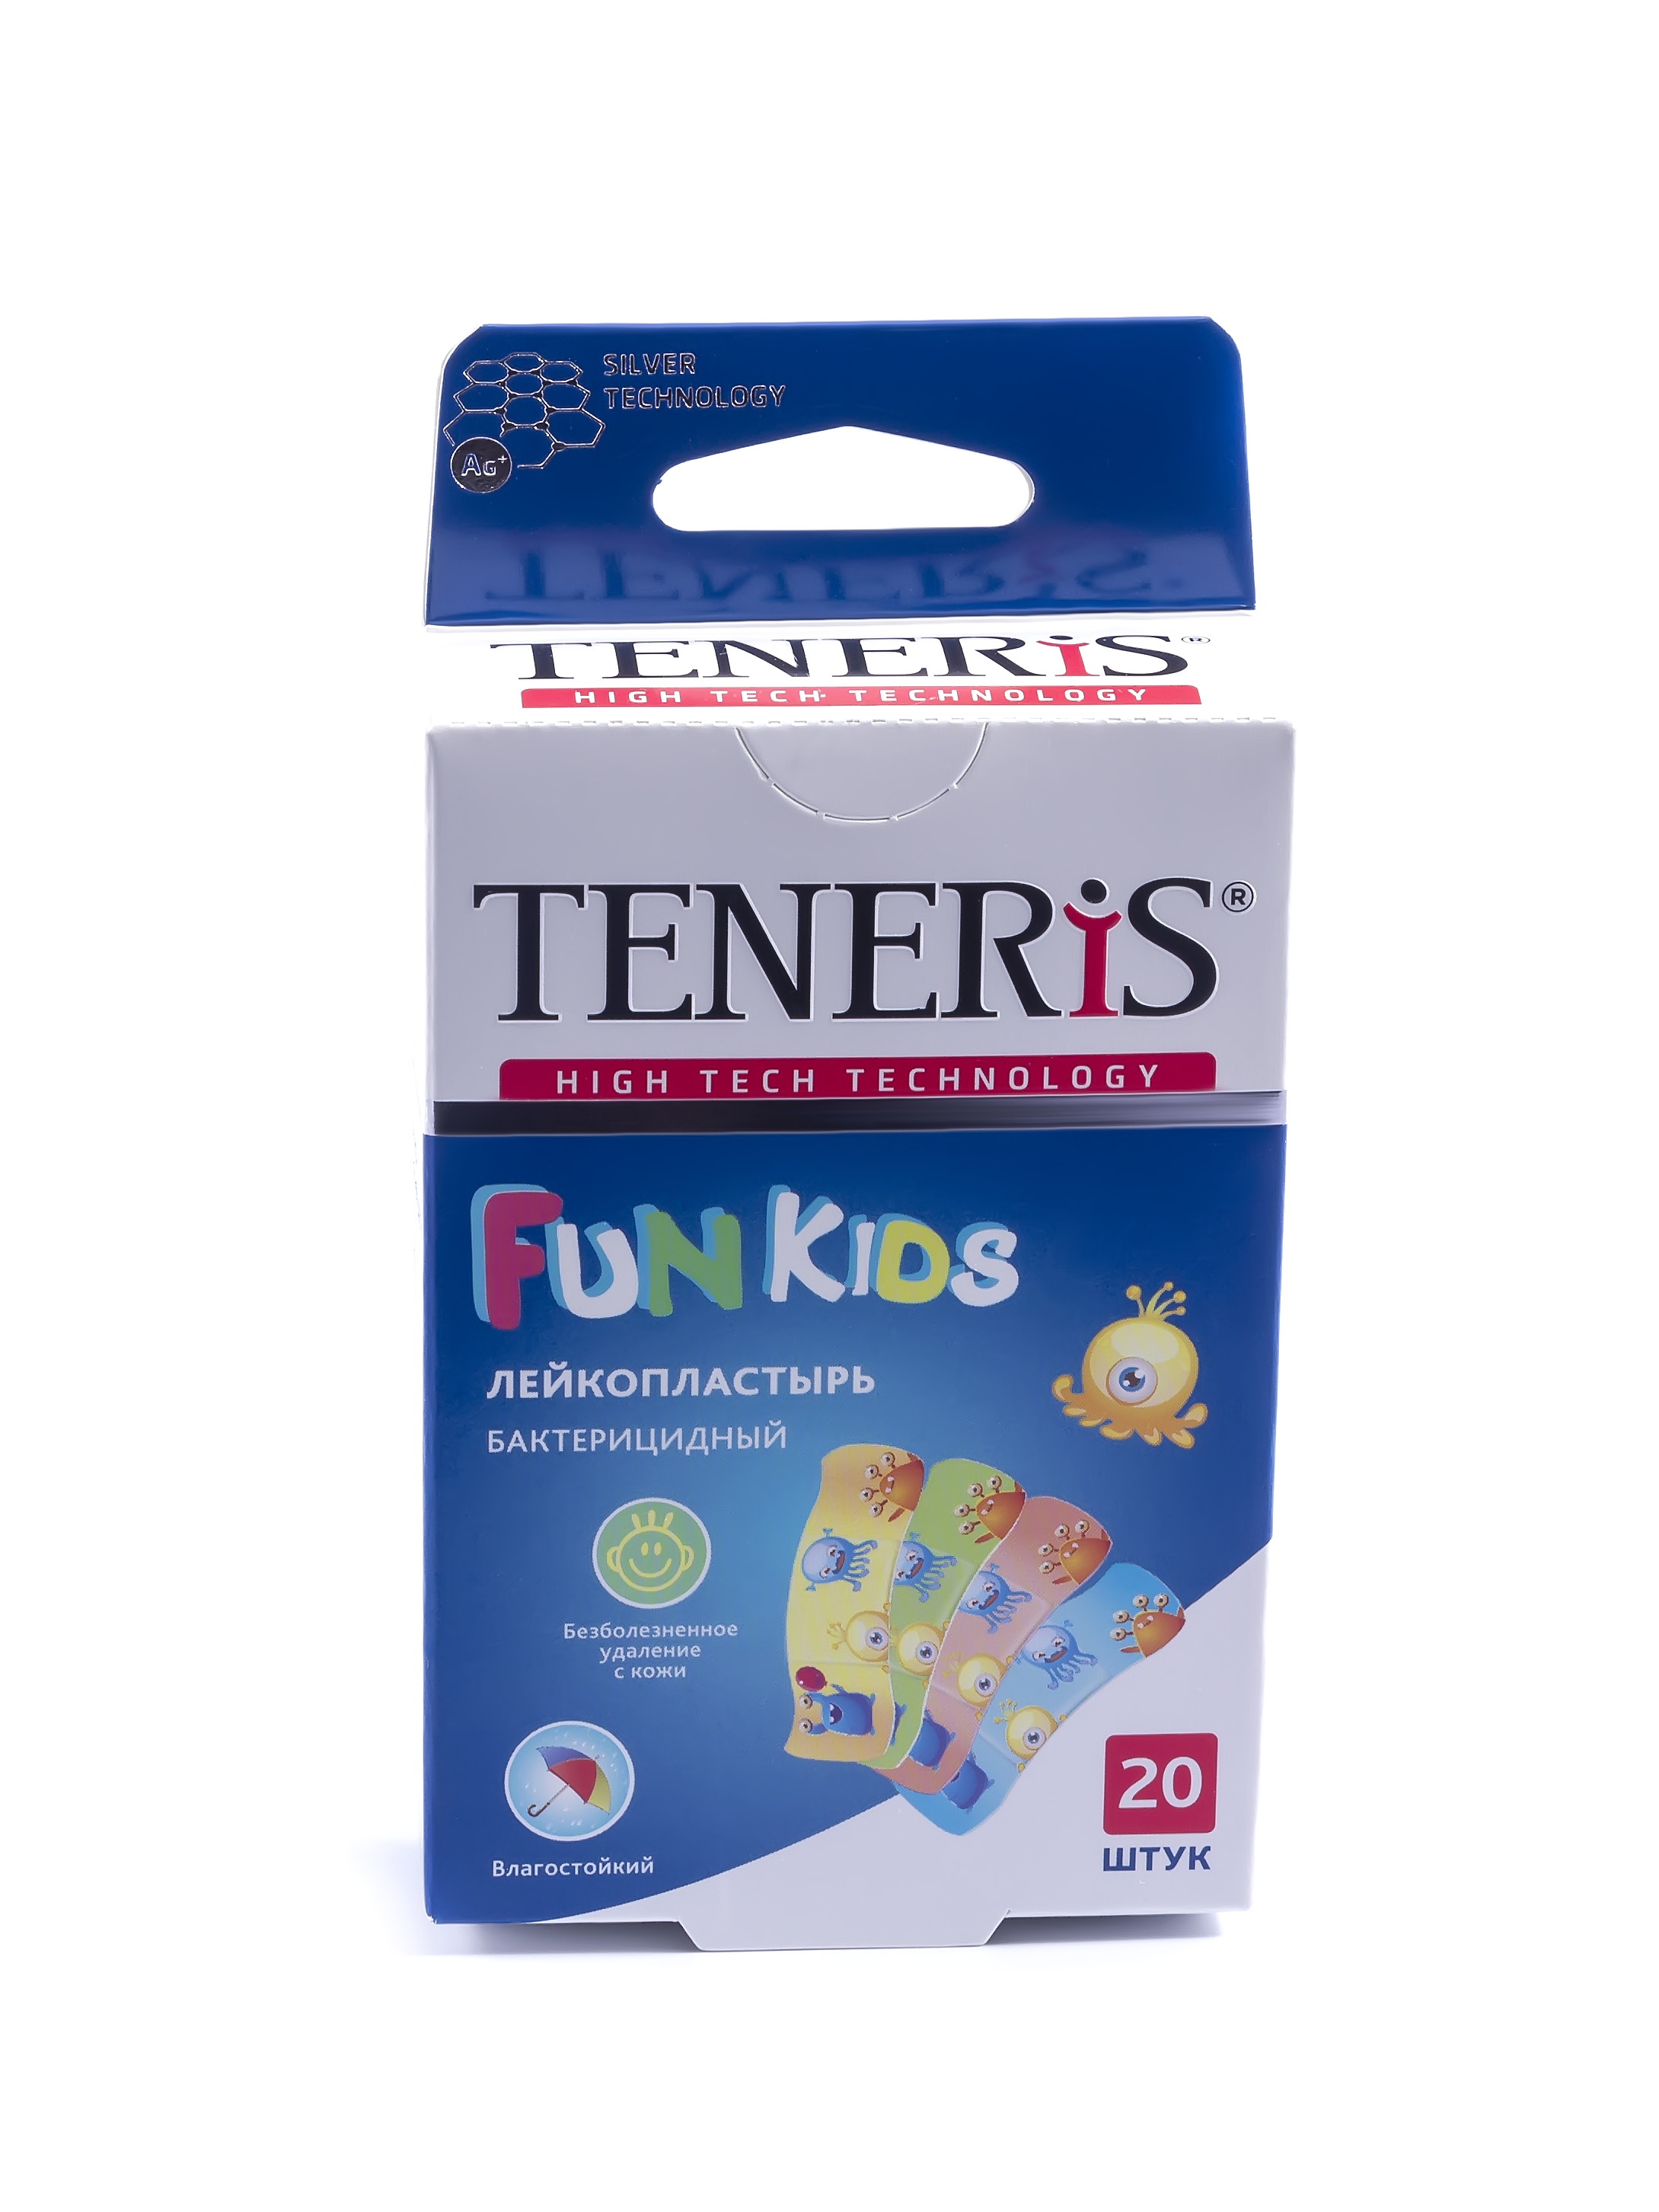 Пластырь Teneris Fun Kids бактерицидный на полимерной основе с рисунками 20 шт.  - купить со скидкой